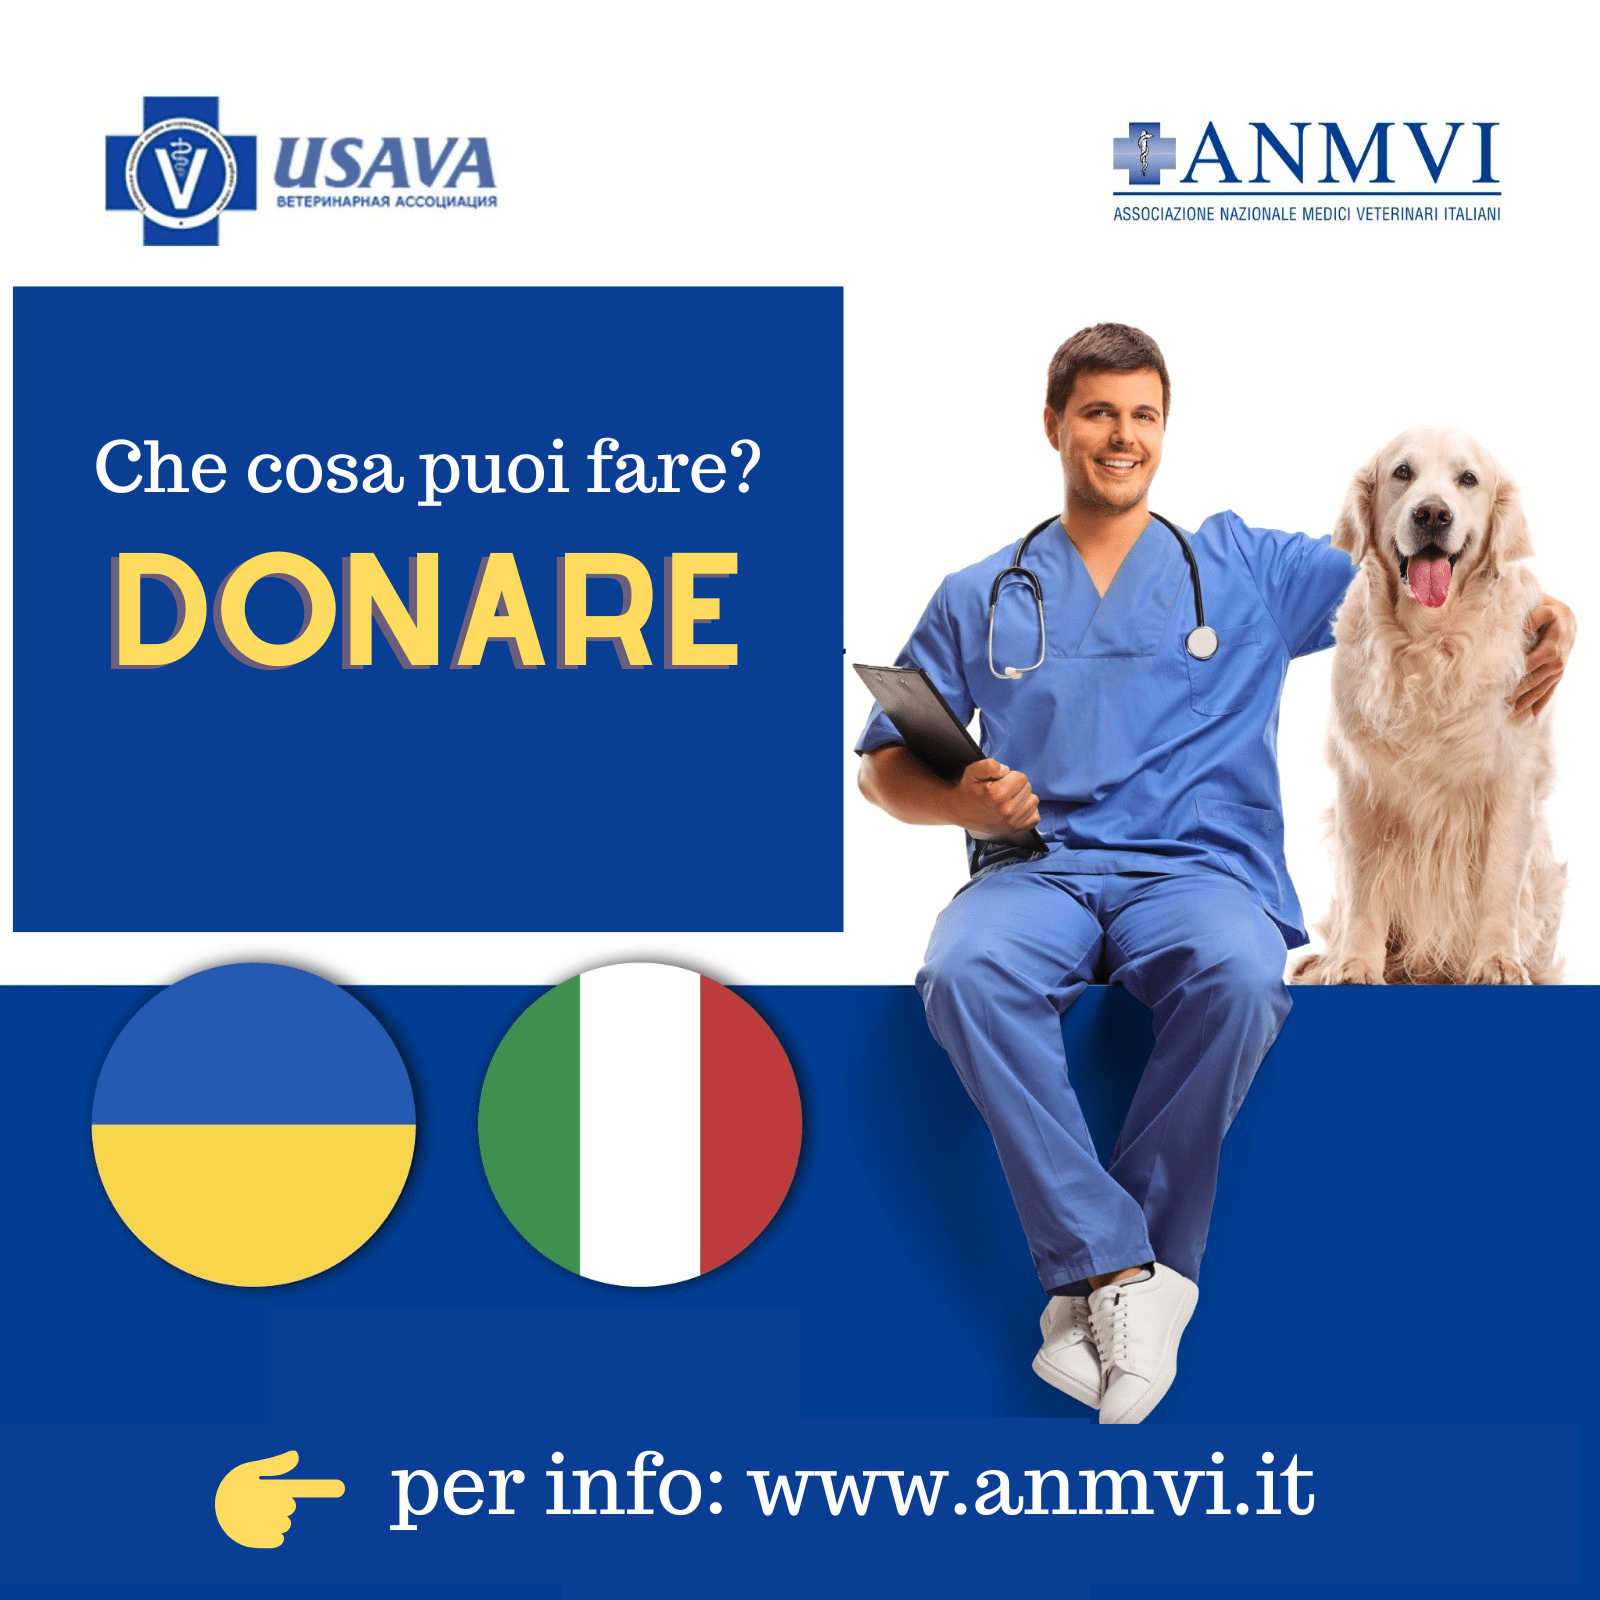 Per informazioni www.anmvi.it